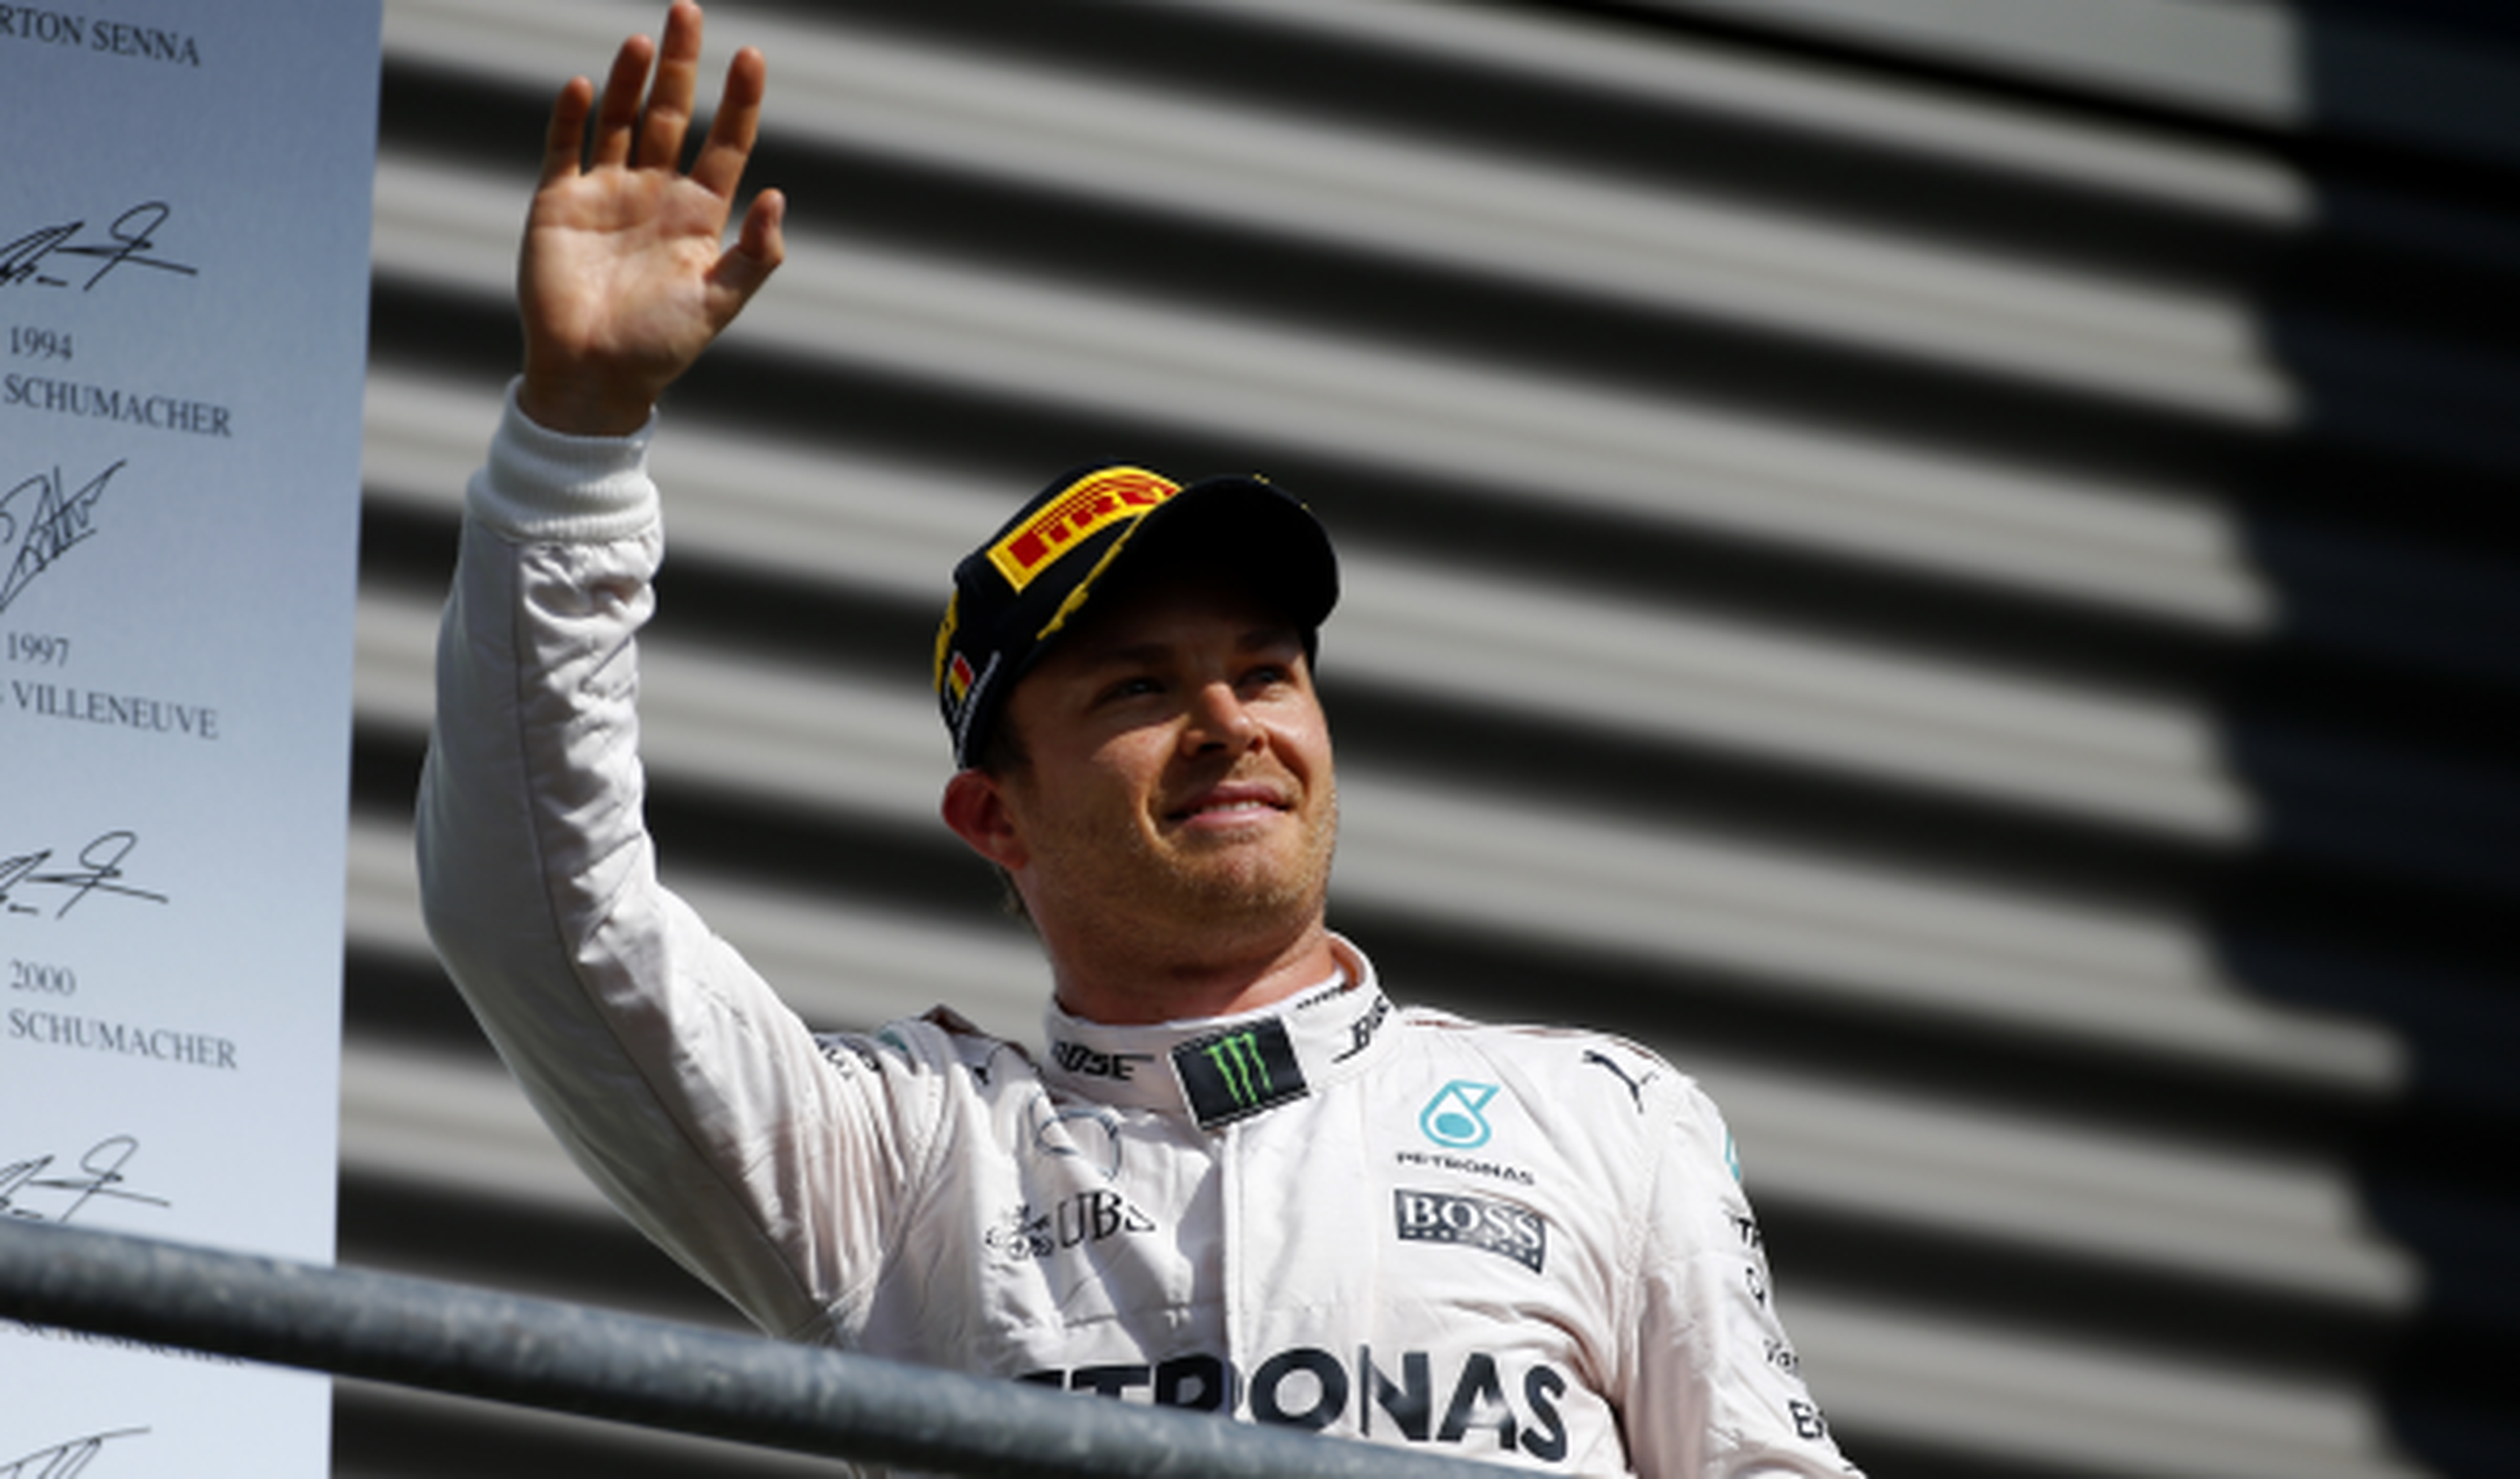 ¿Por qué pitan a Rosberg tras ganar en Spa-Francorchamps?